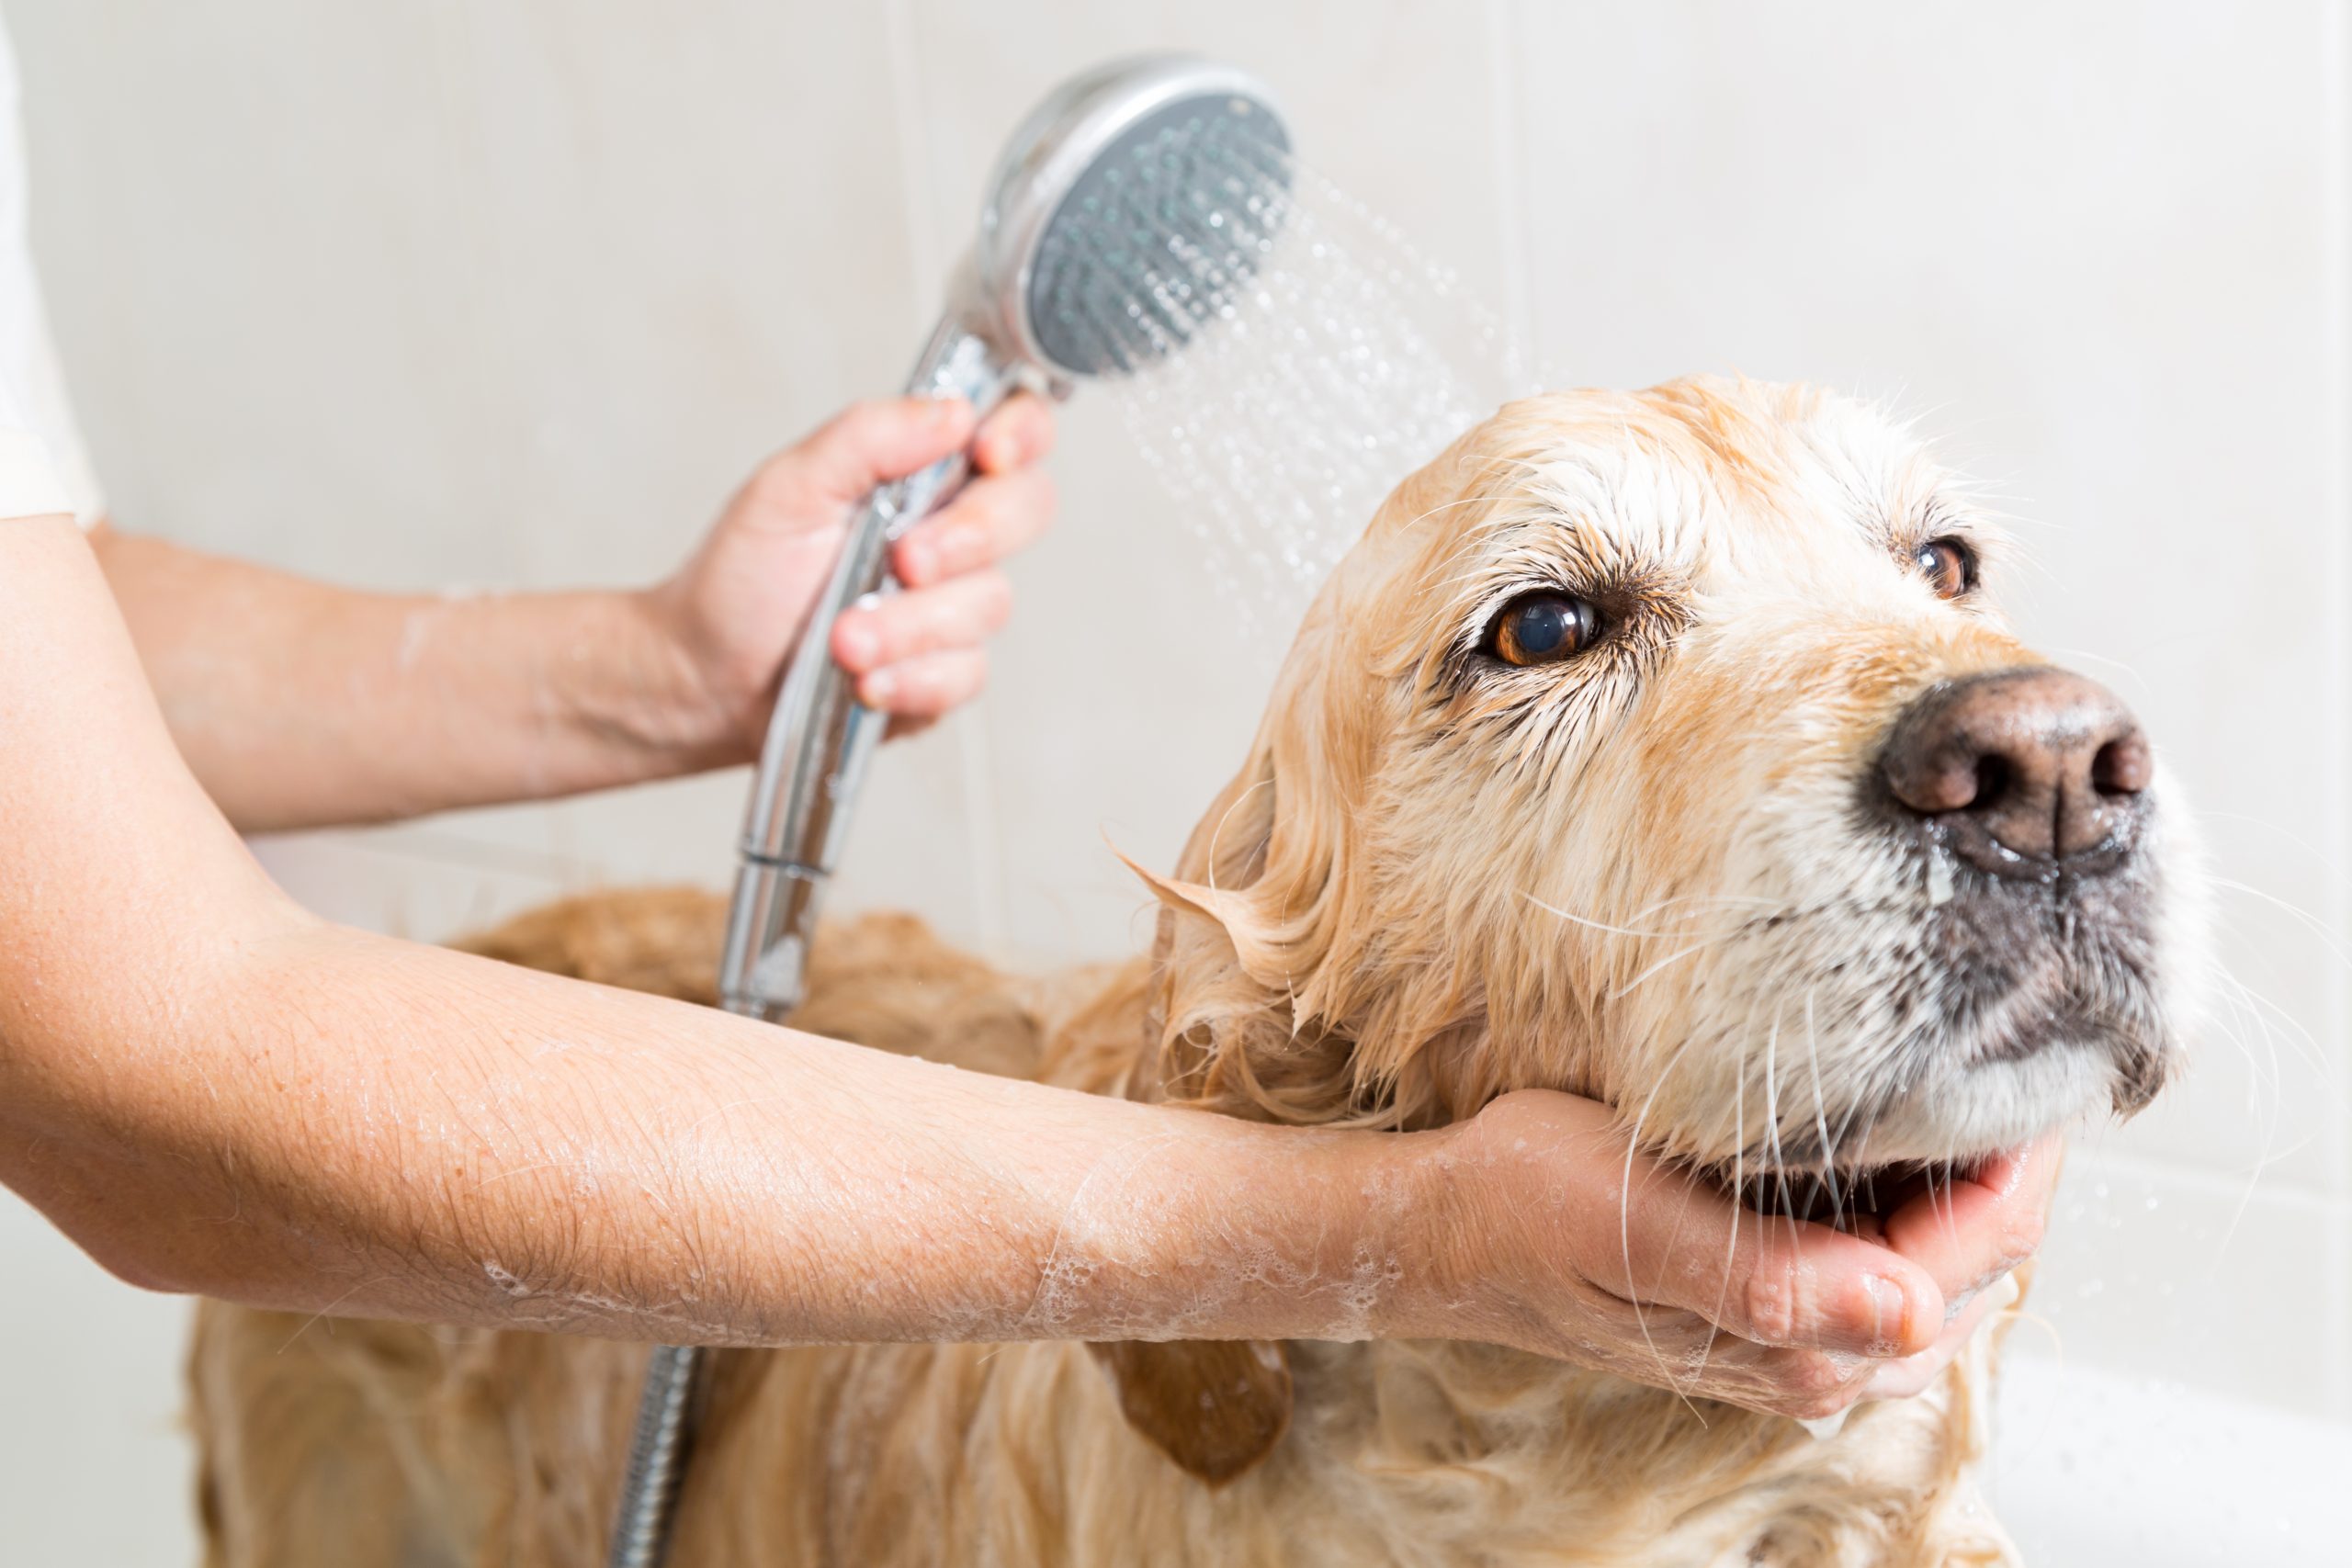 Dog having a bath